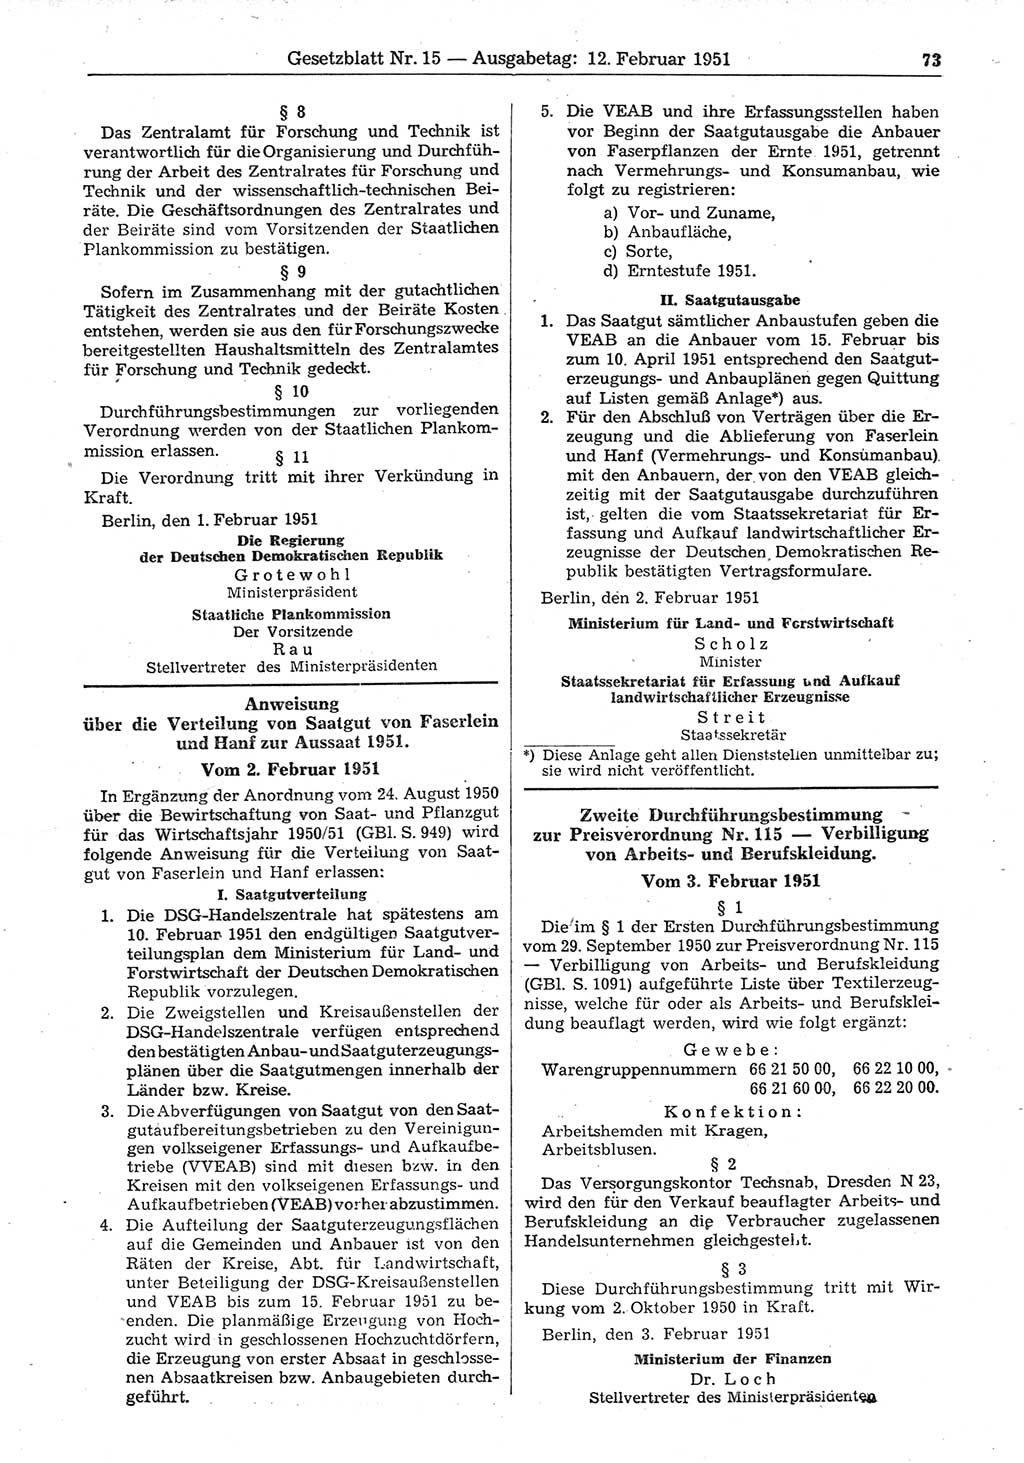 Gesetzblatt (GBl.) der Deutschen Demokratischen Republik (DDR) 1951, Seite 73 (GBl. DDR 1951, S. 73)